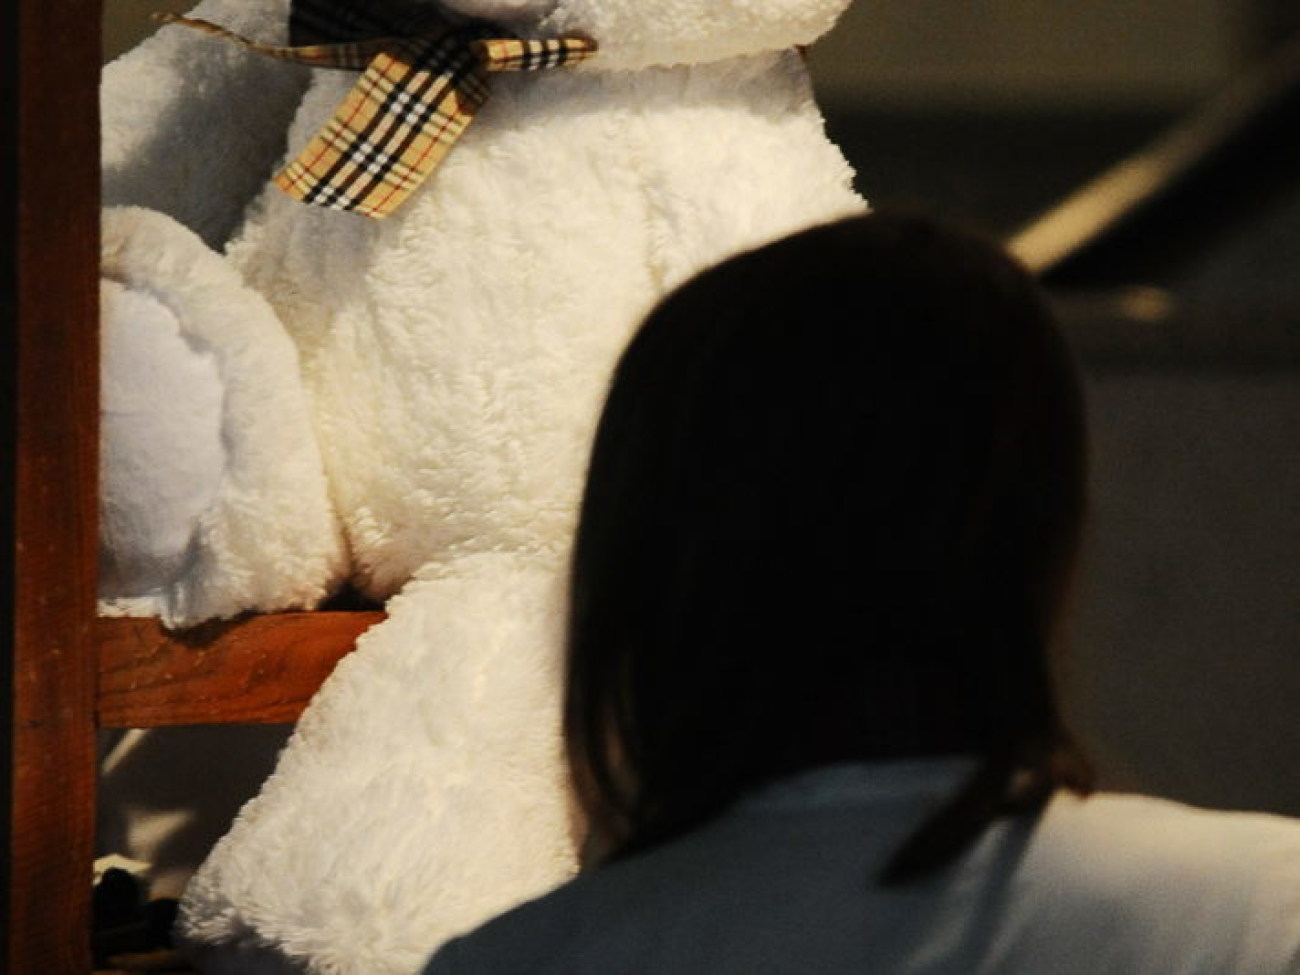 В Киеве открылась выставка мишек Тедди и фарфоровых кукол, 20 декабря 2012г.